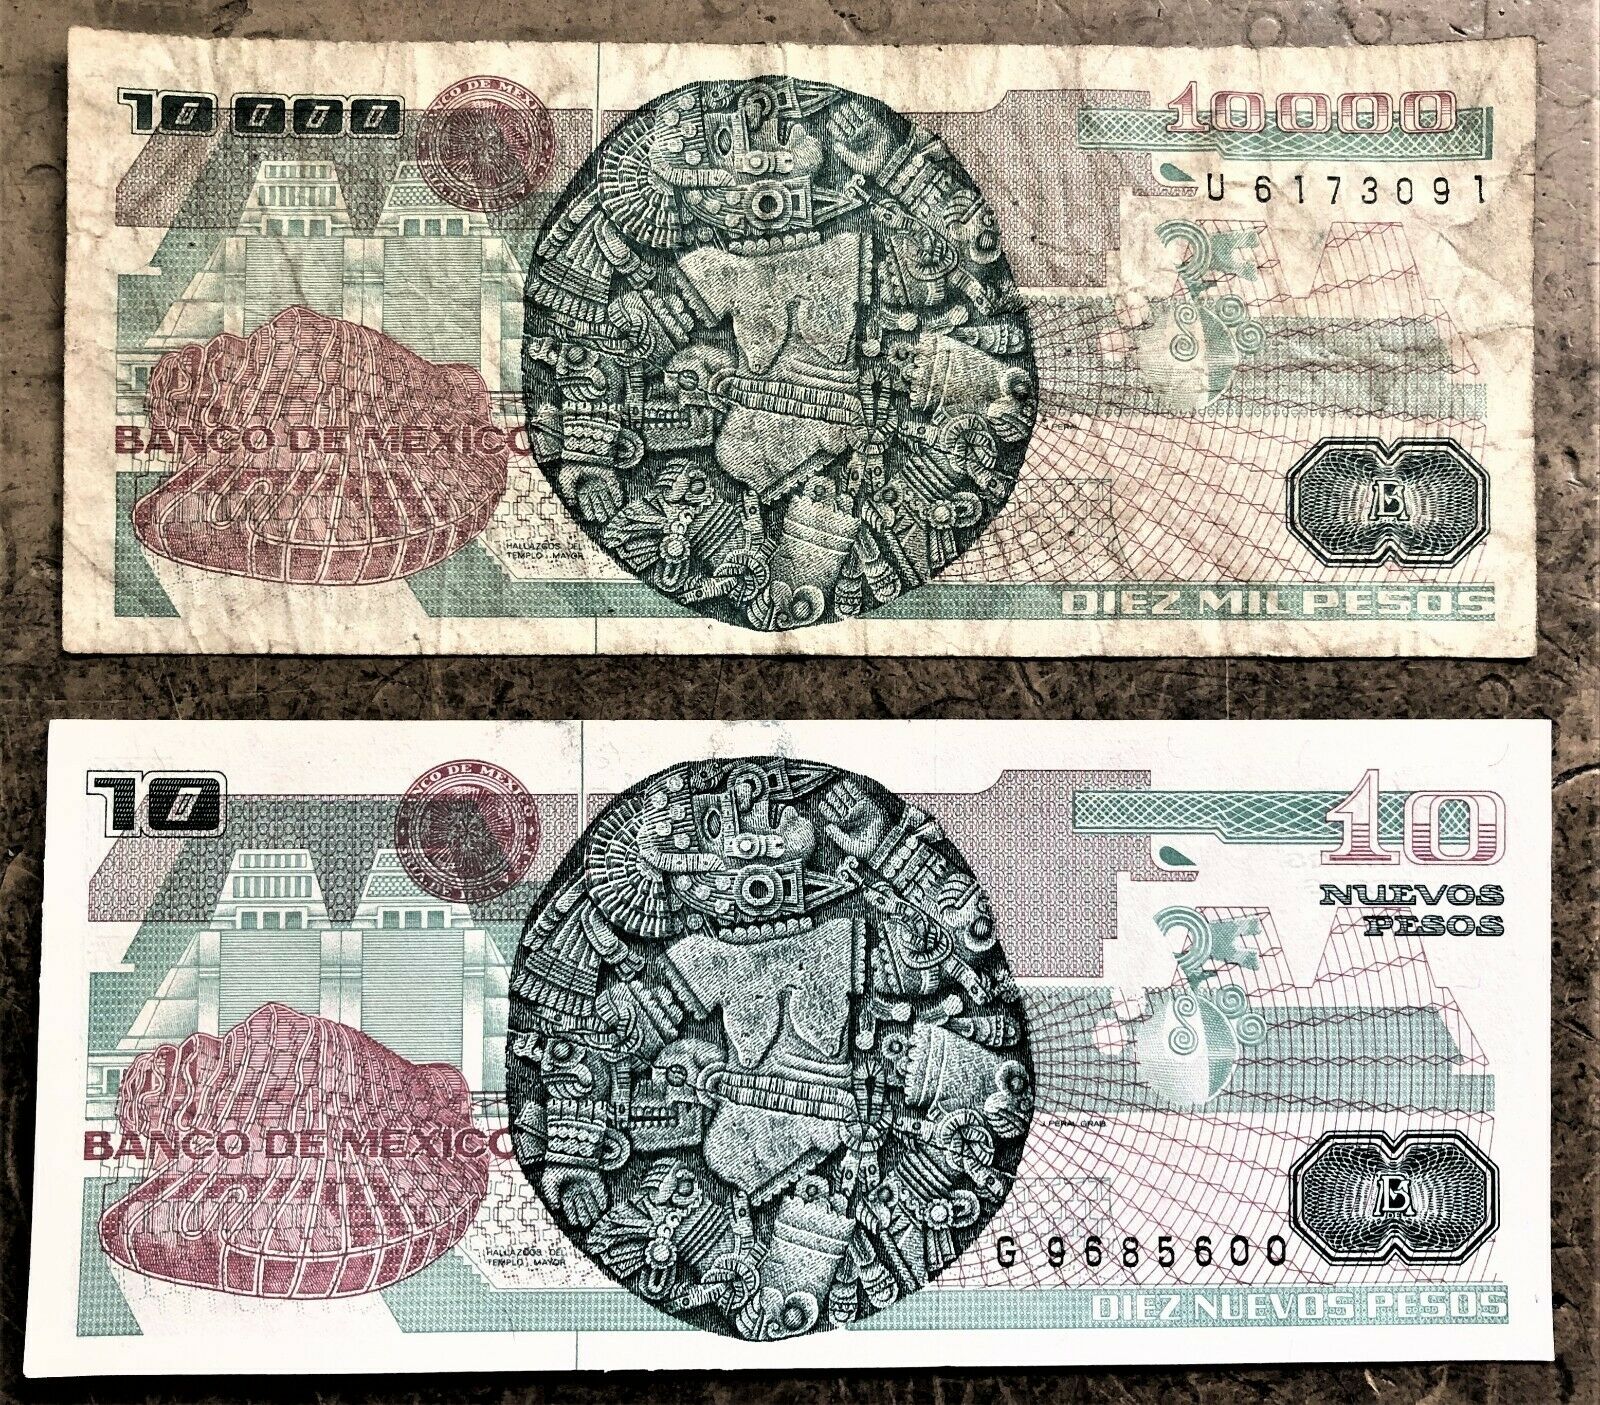 CHANGE-OVER PAIR MEXICO 10 | 000 PESOS of 1991 & 10 NEW PESOS of 1992 SAME DESIGN